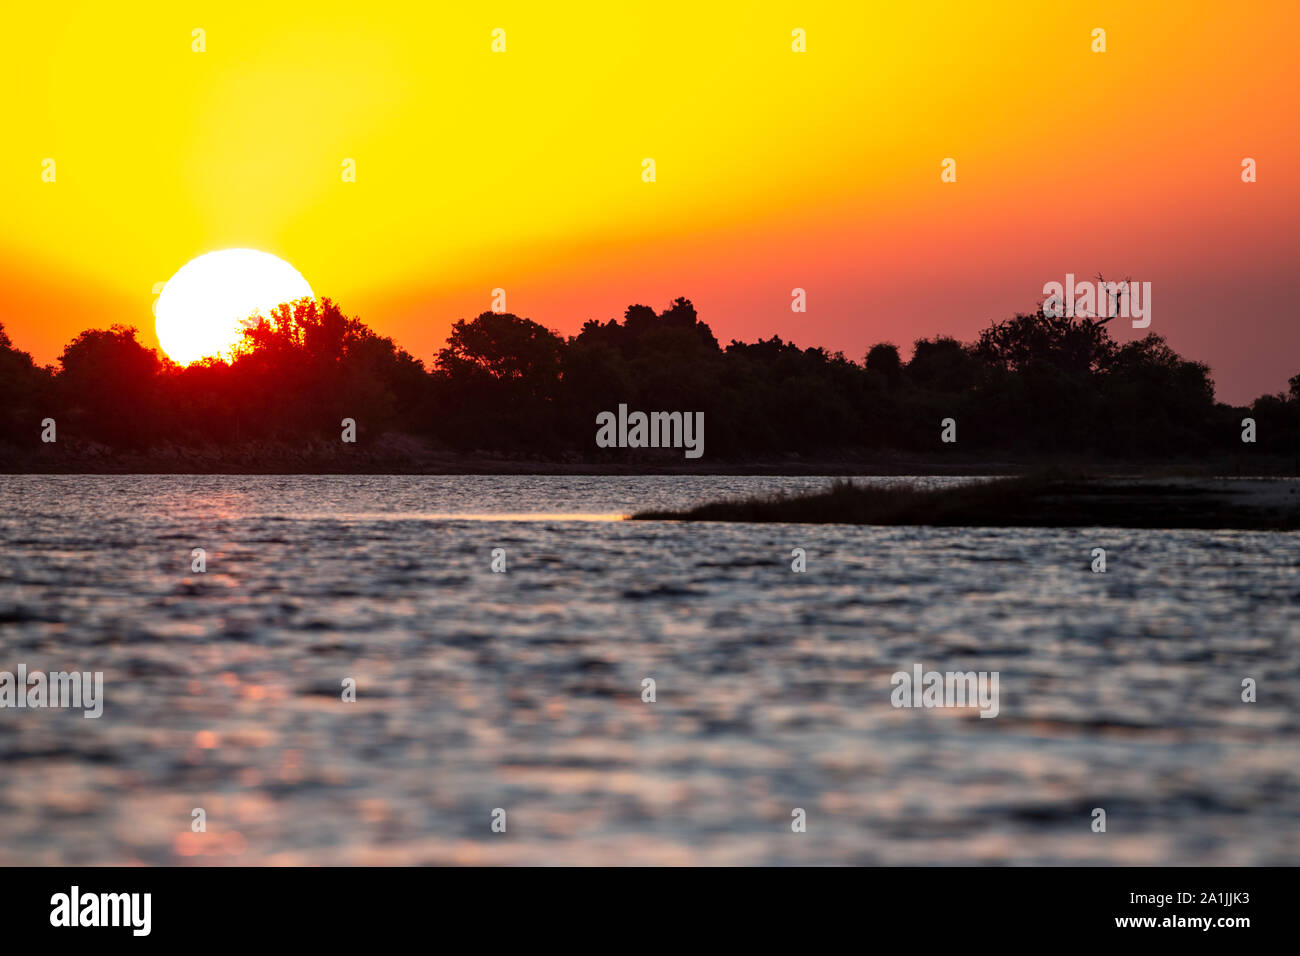 Ricco di colore arancione e oro tramonto sul fiume Chobe in Botswana come il sole scende Foto Stock